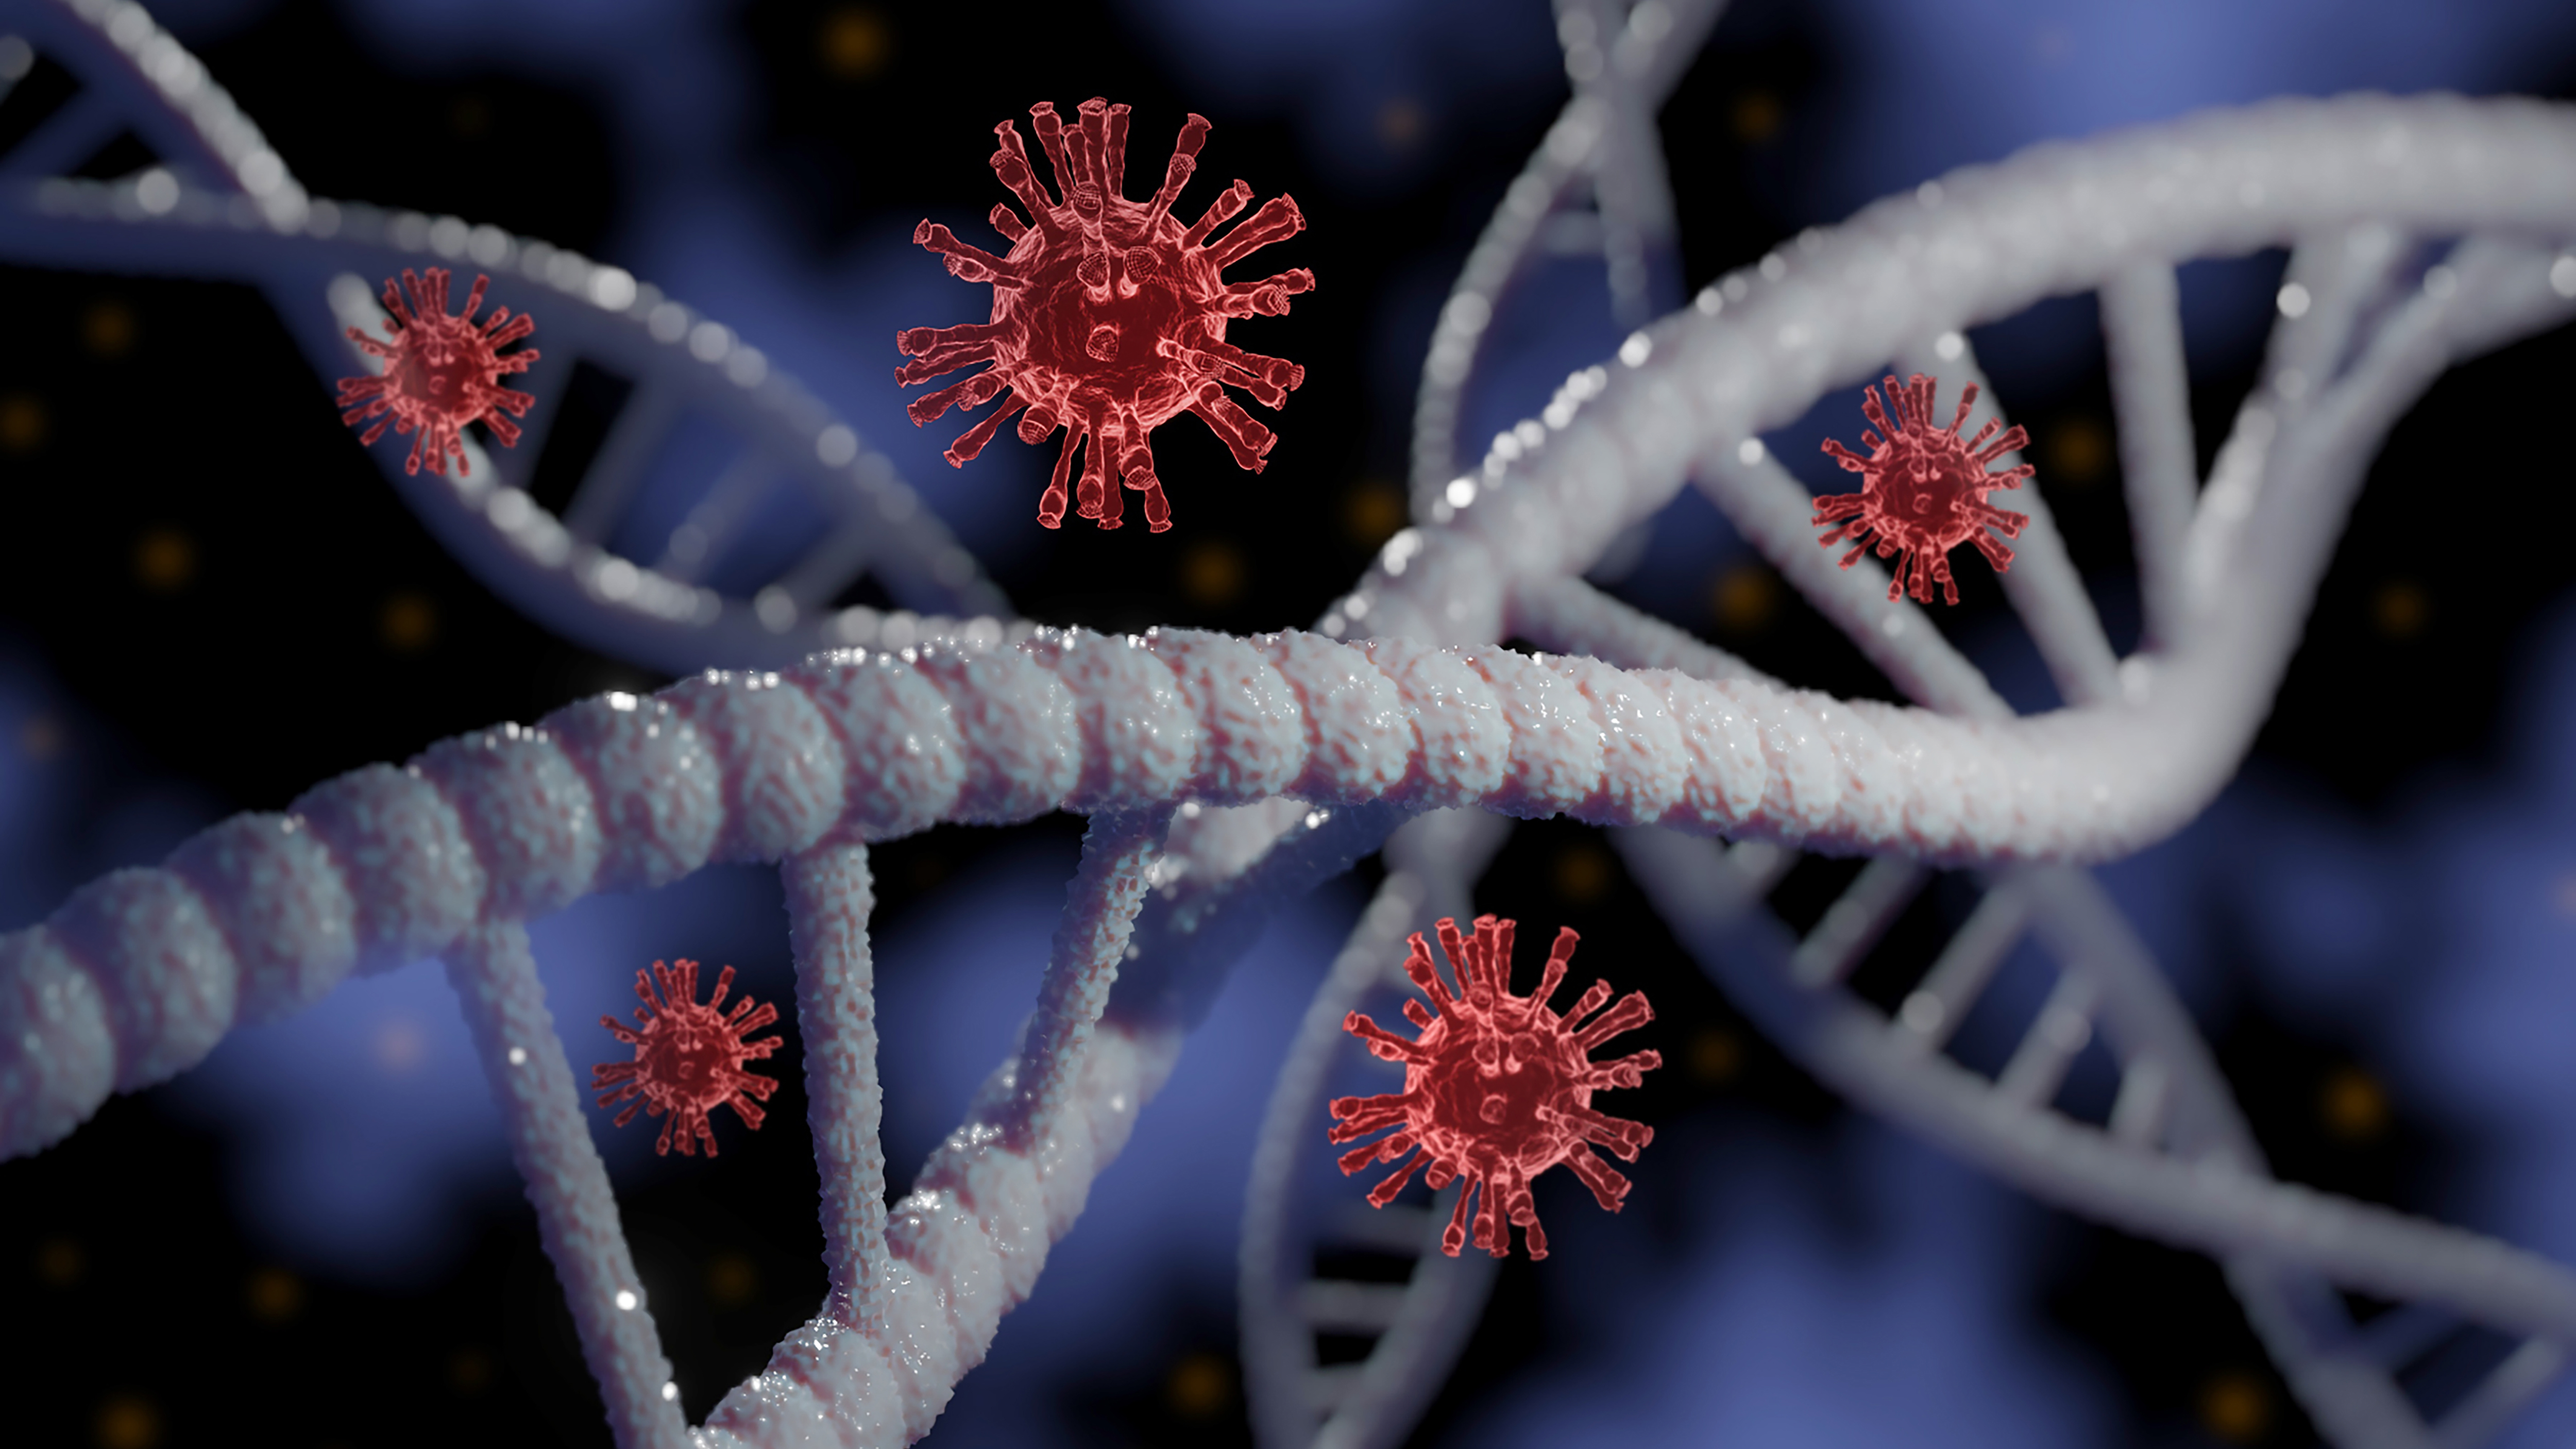 Los científicos de la Universidad de Linköping (LiU) detectaron un mecanismo biológico que nunca antes se había descrito y que puede ser parte de la explicación de la infección por coronavirus SARS-CoV-2 grave (Getty)